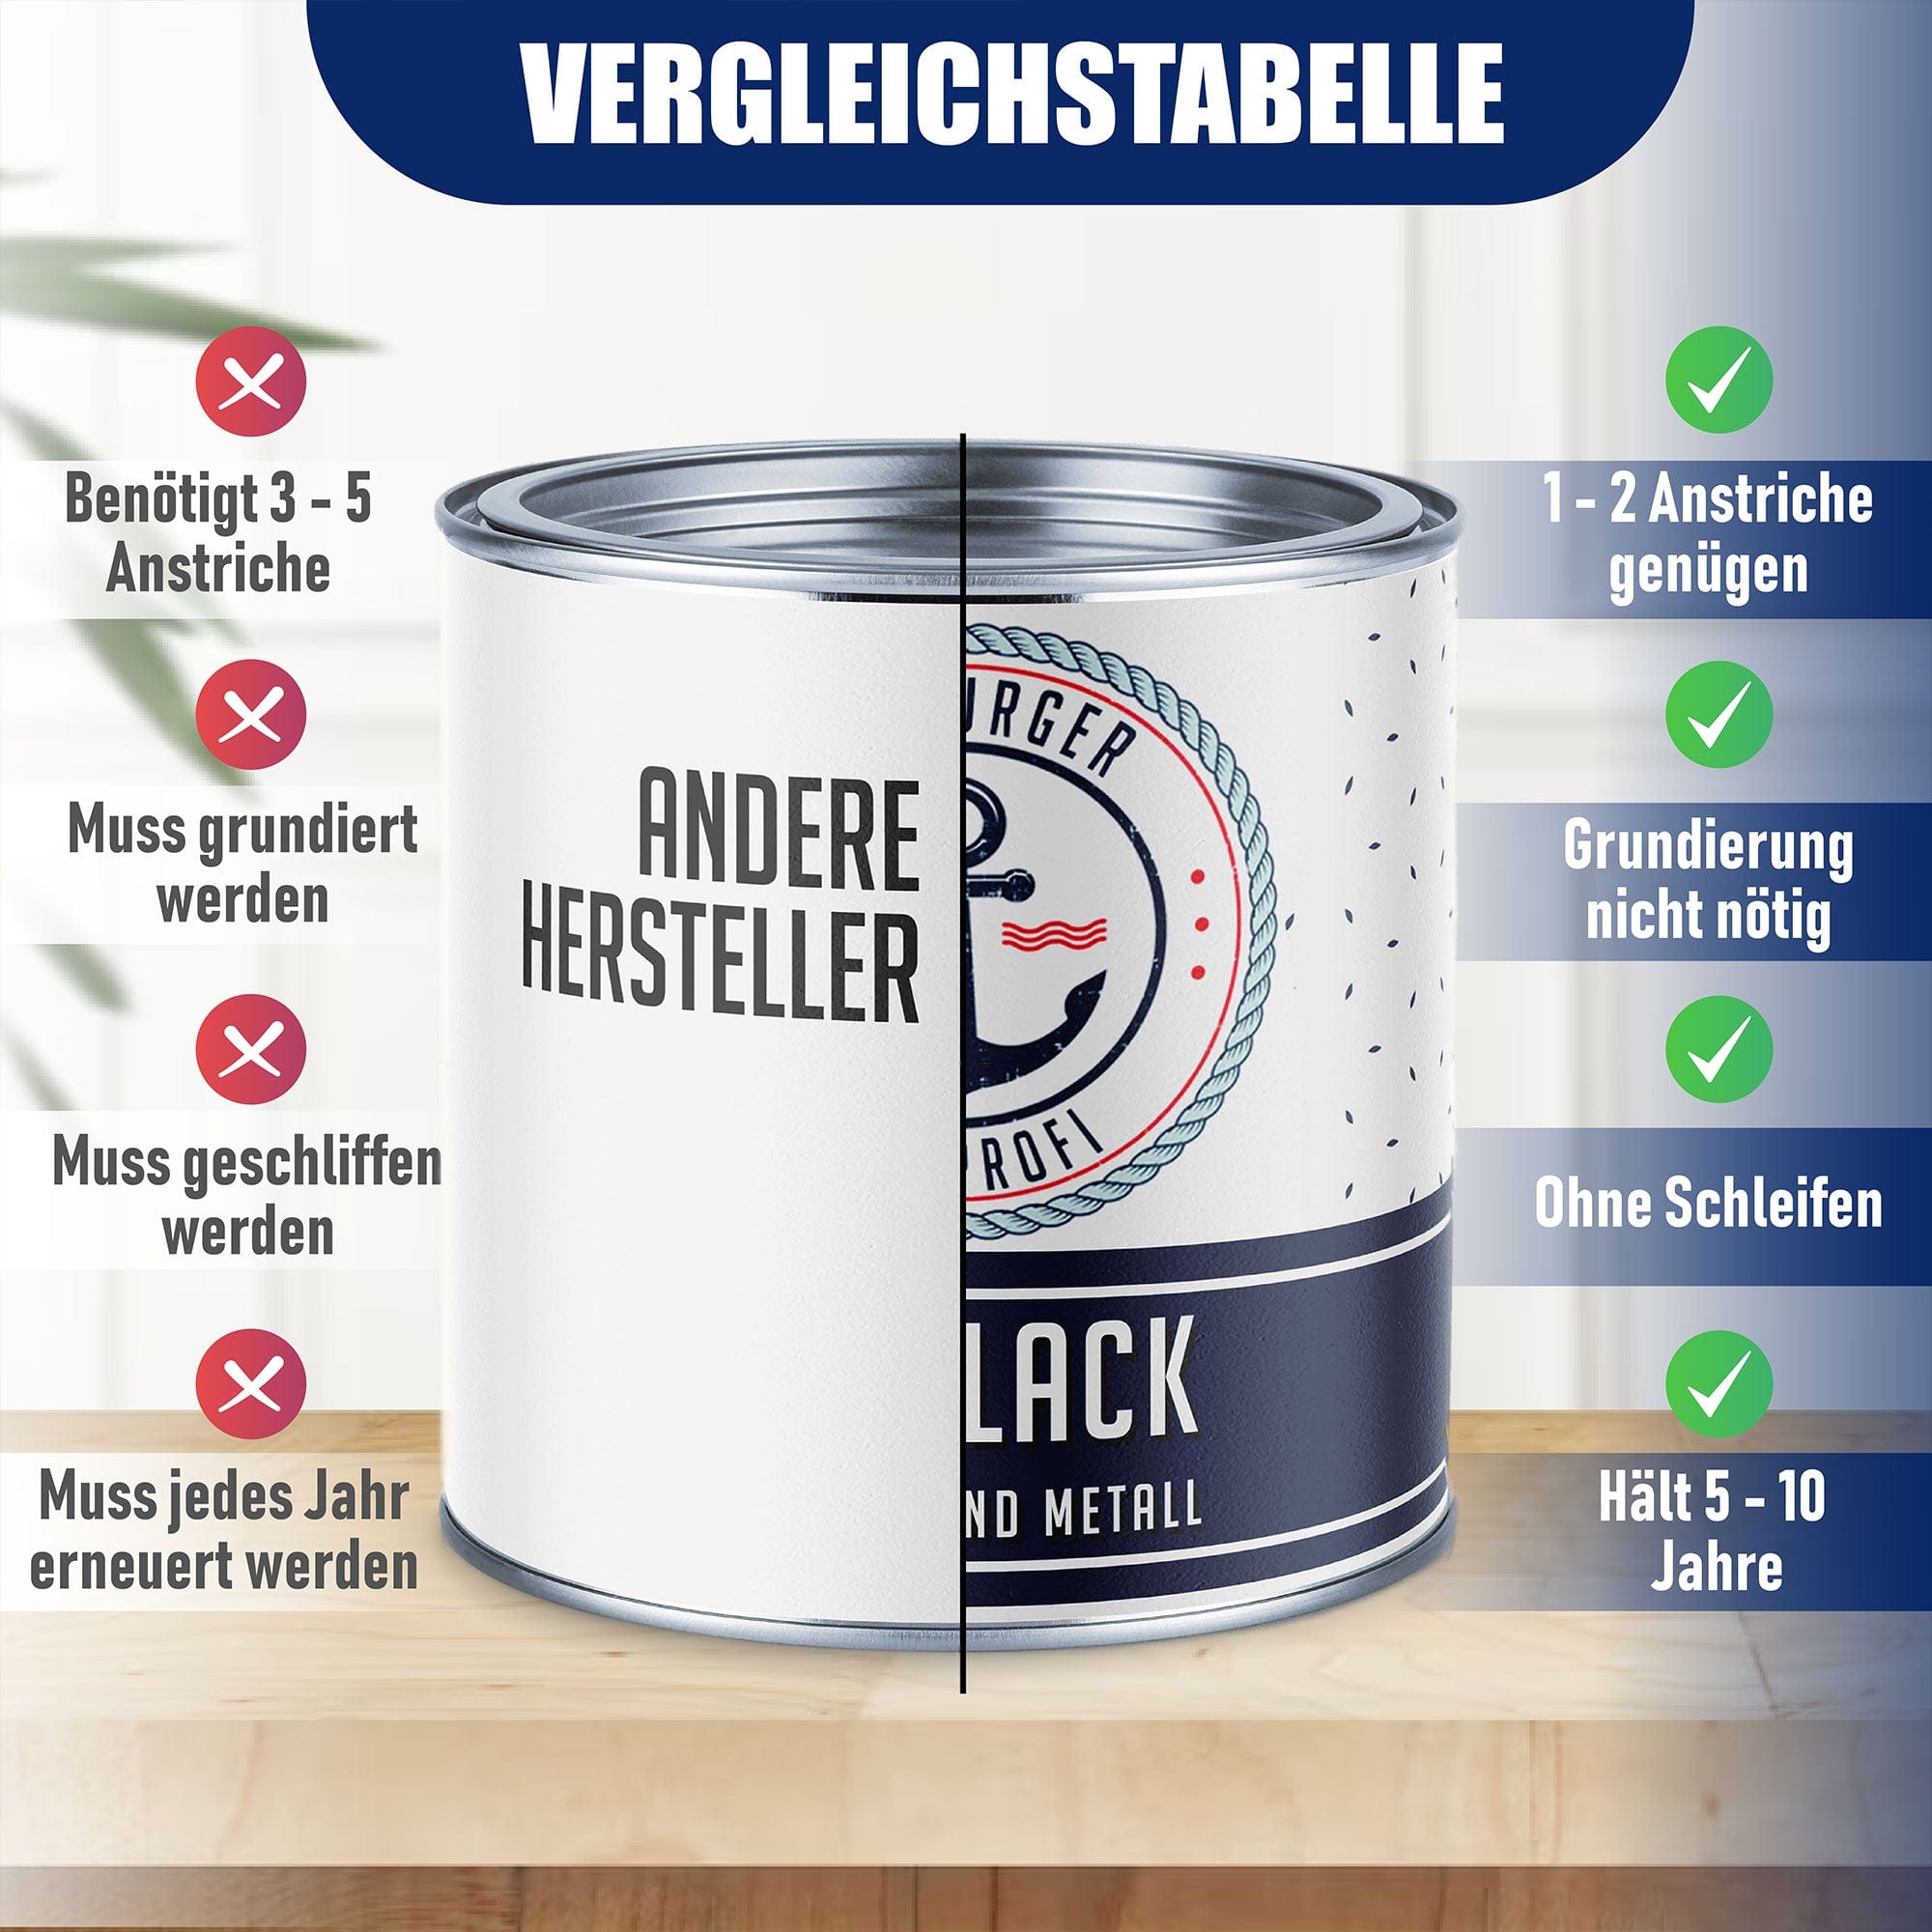 Hamburger Lack-Profi Lacke & Beschichtungen Hamburger Lack-Profi Buntlack mit Lackierset (X300) & Verdünnung (1 L) - 30% Sparangebot